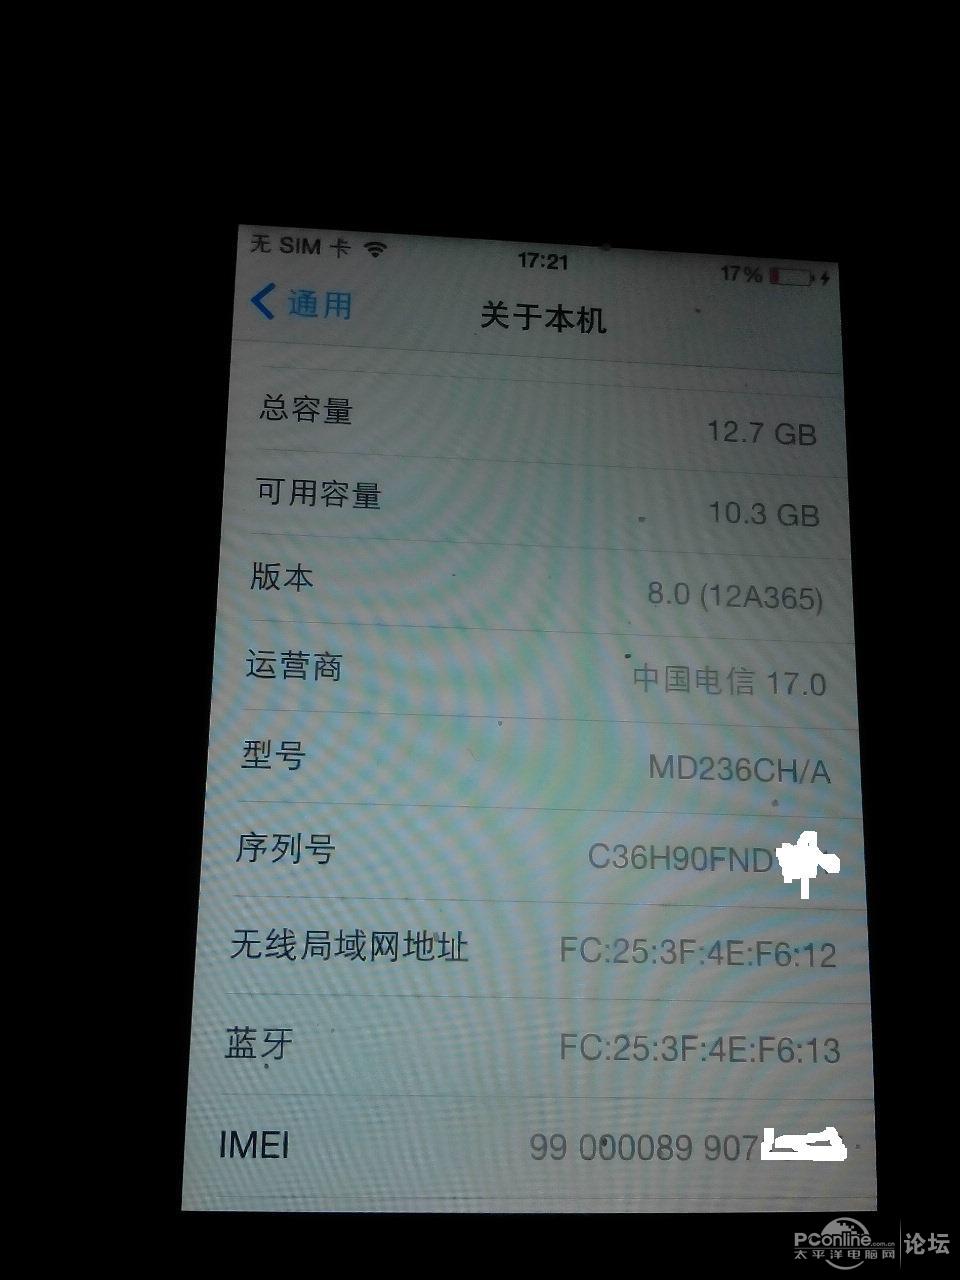 闲置手机 国行电信iPhone4S 黑色16G 淘宝交易